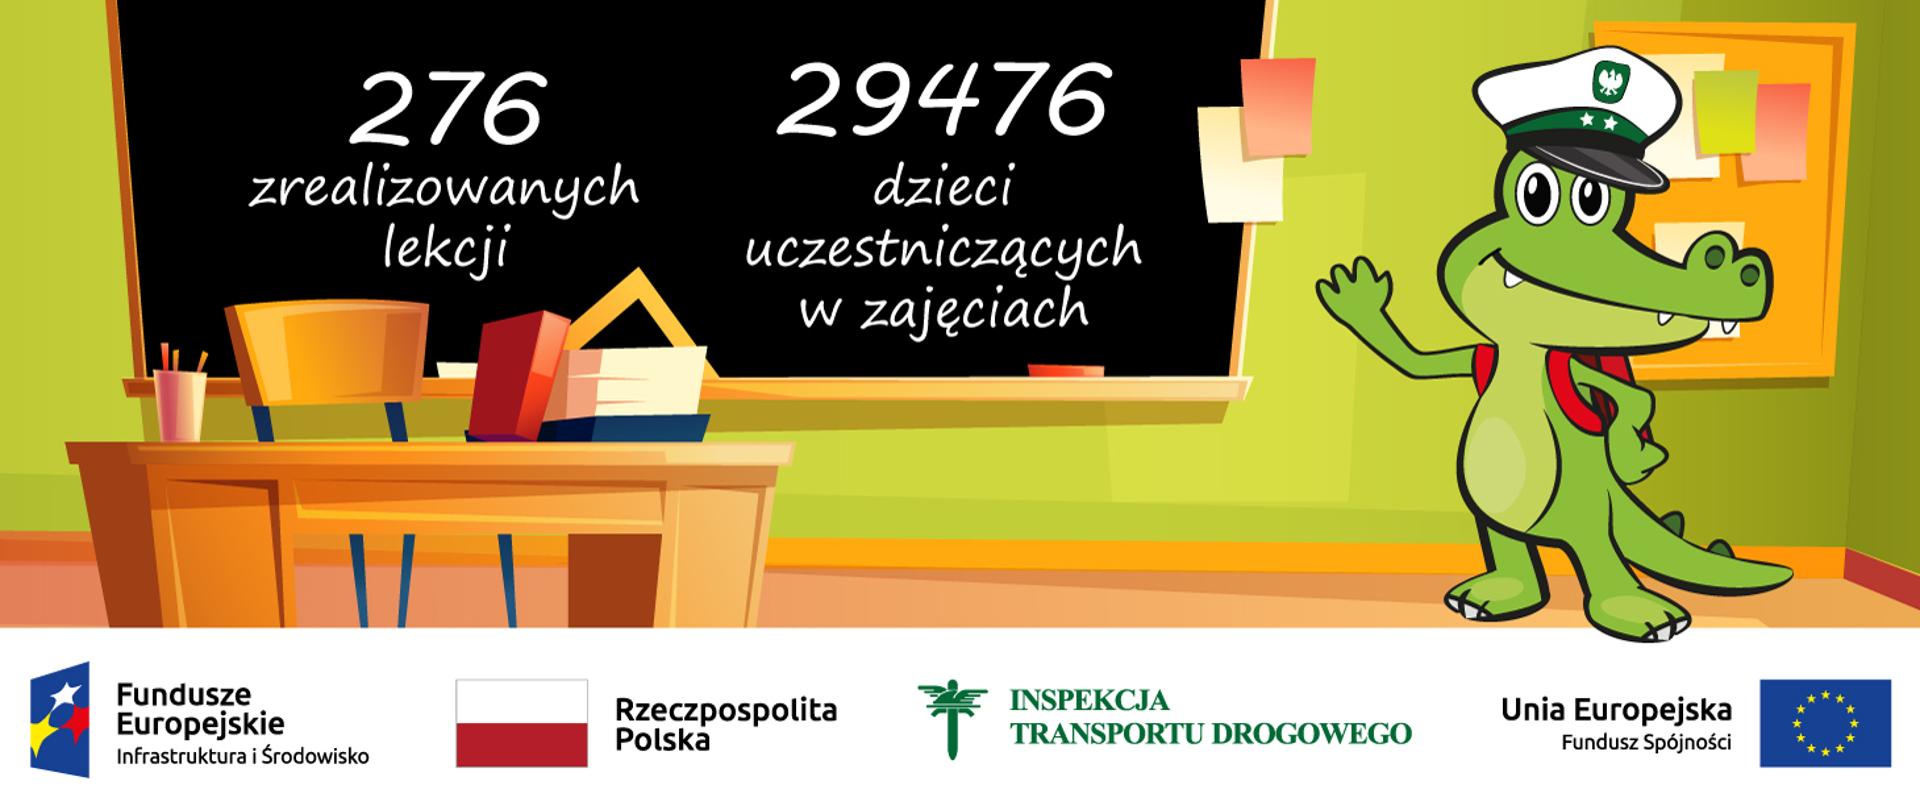 grafika prezentująca liczbę zrealizowanych lekcji - 276 i liczbę dzieci uczestniczących w zajęciach - 29476